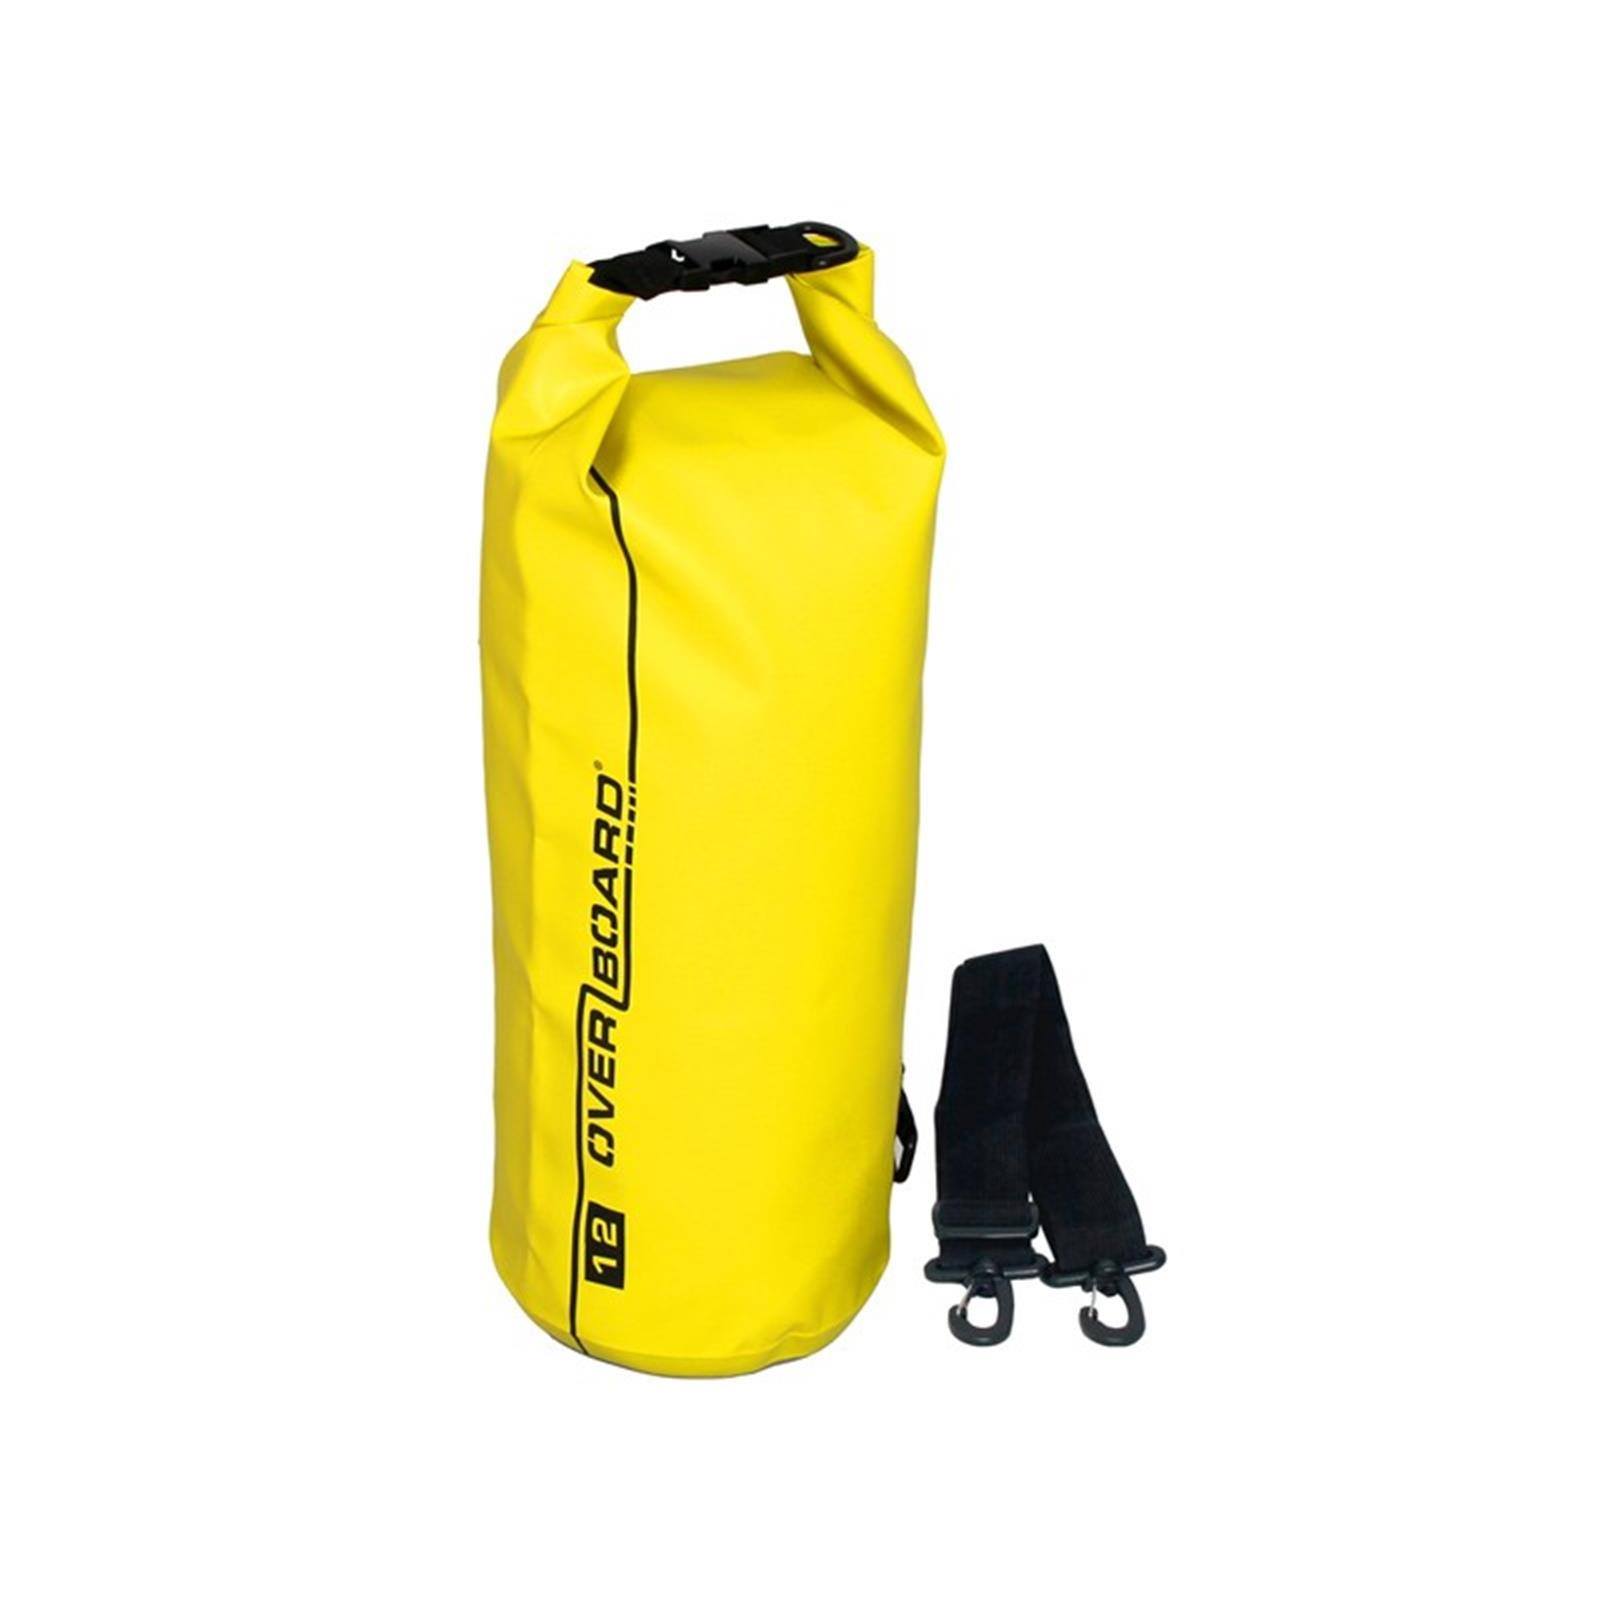 kleding Op tijd Herhaal Overboard waterproof duffel bag 12 L Yellow • Safety in water sports